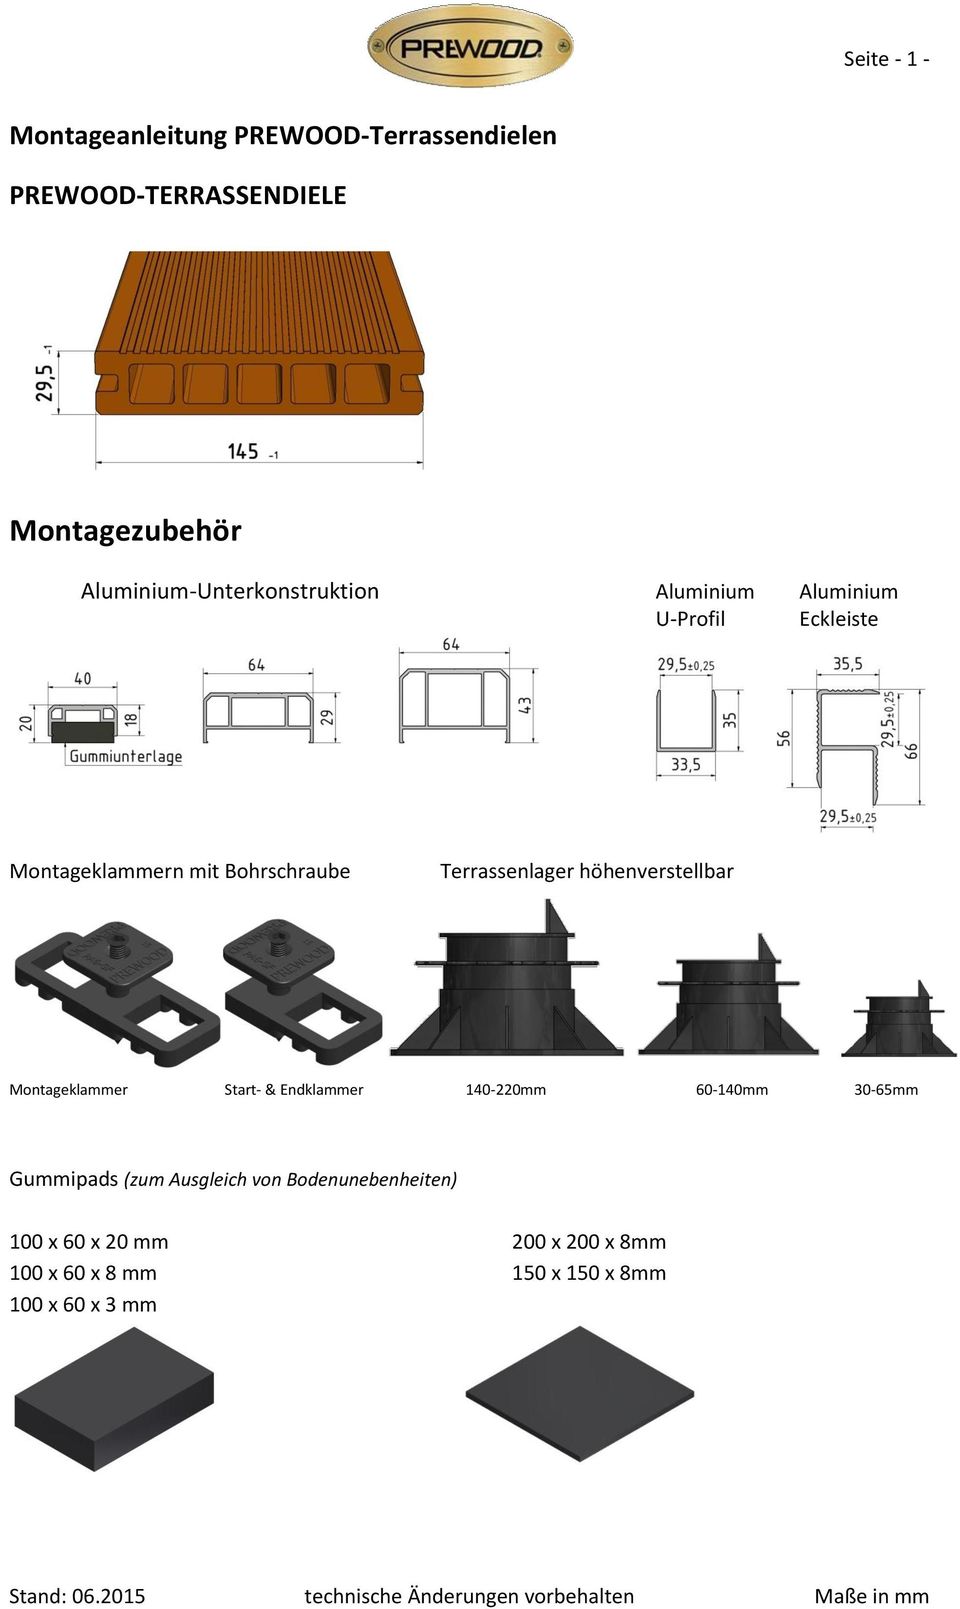 Terrassenlager höhenverstellbar Montageklammer Start- & Endklammer 140-220mm 60-140mm 30-65mm Gummipads